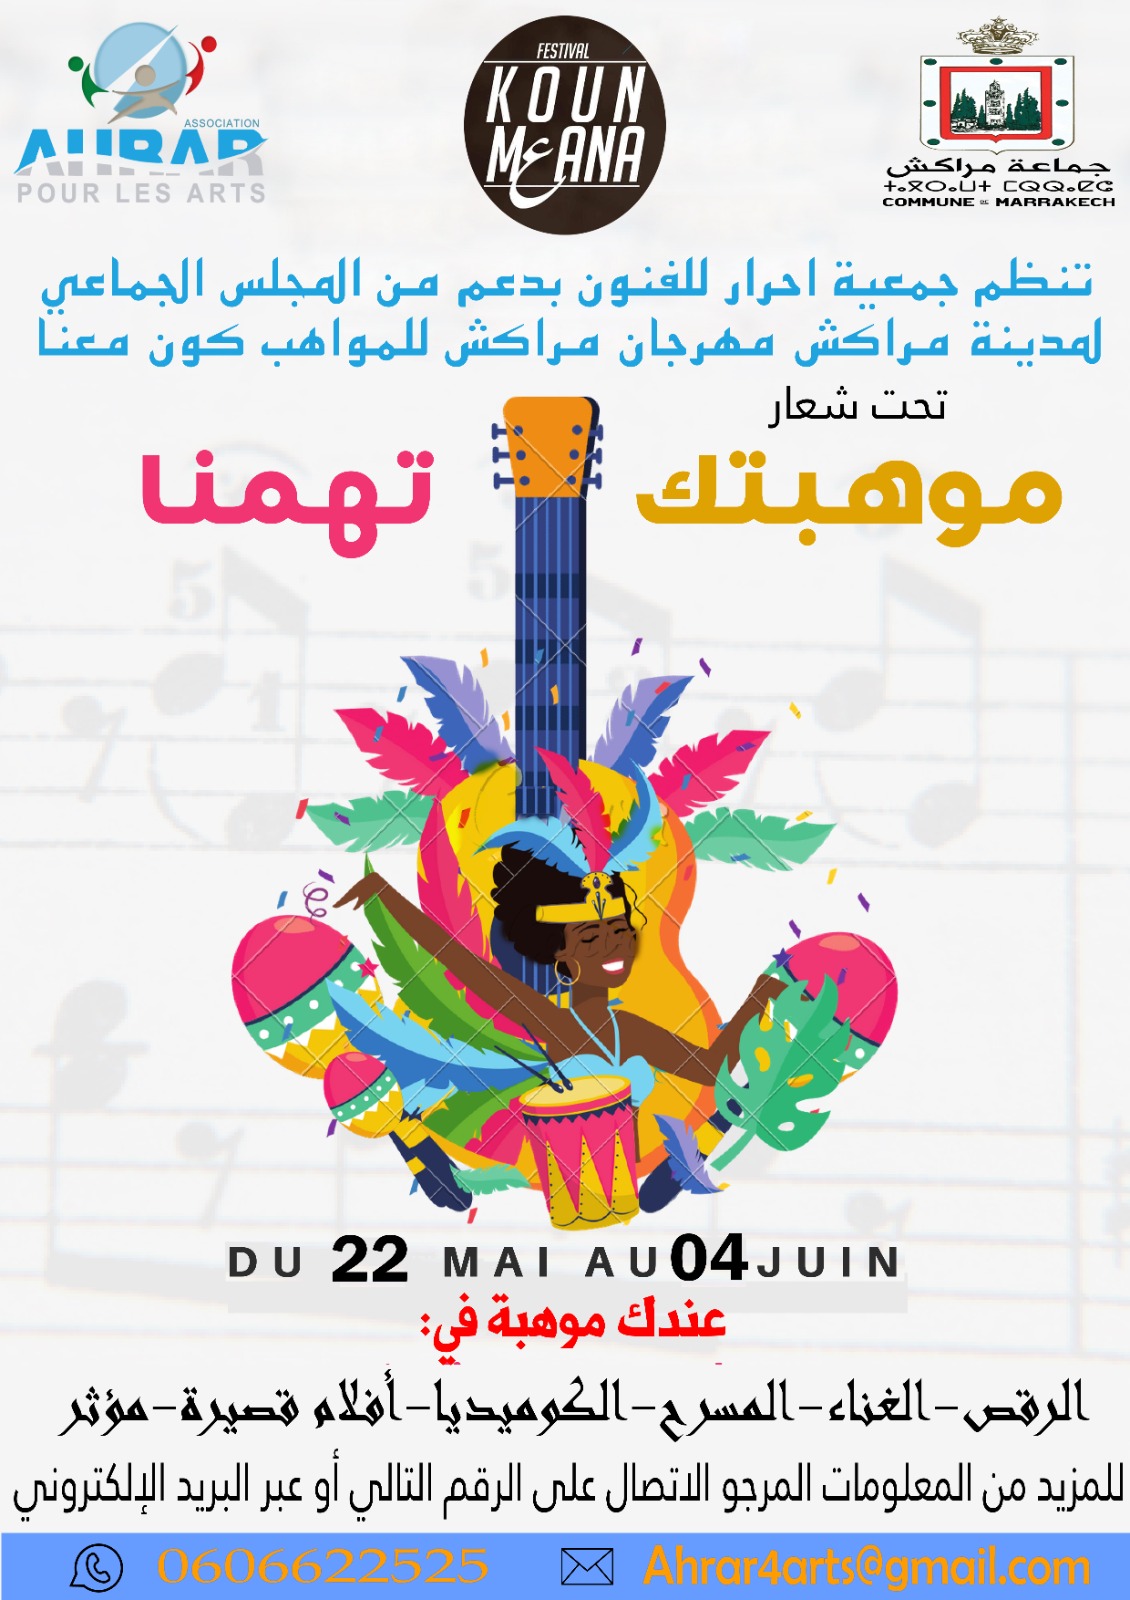 Le festival de musique et de jeunes talents aura lieu du 22 mai au 4 juin.